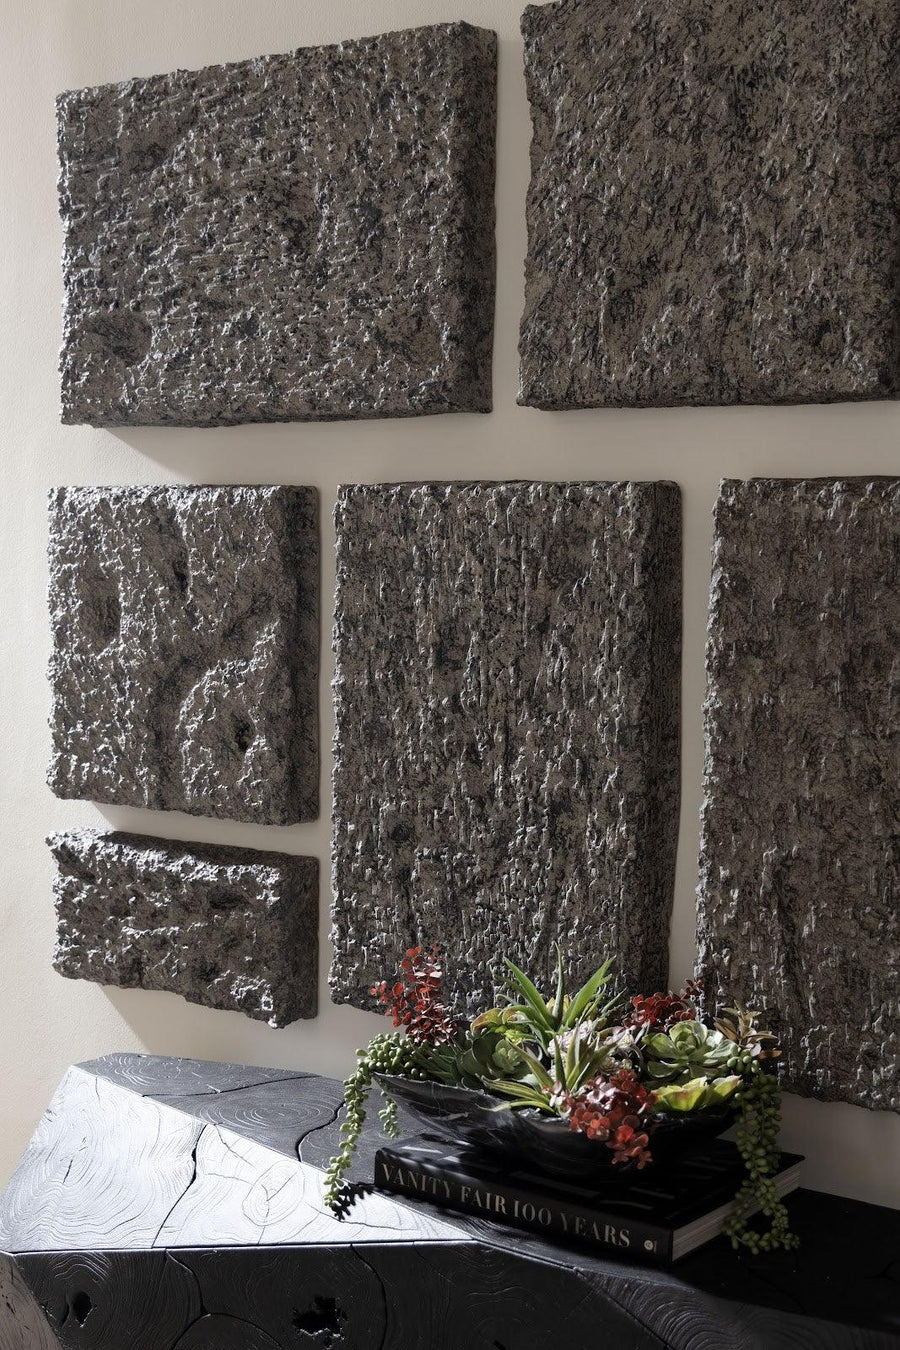 Etched Rock Puzzle Wall Tiles Set of 9 - Maison Vogue